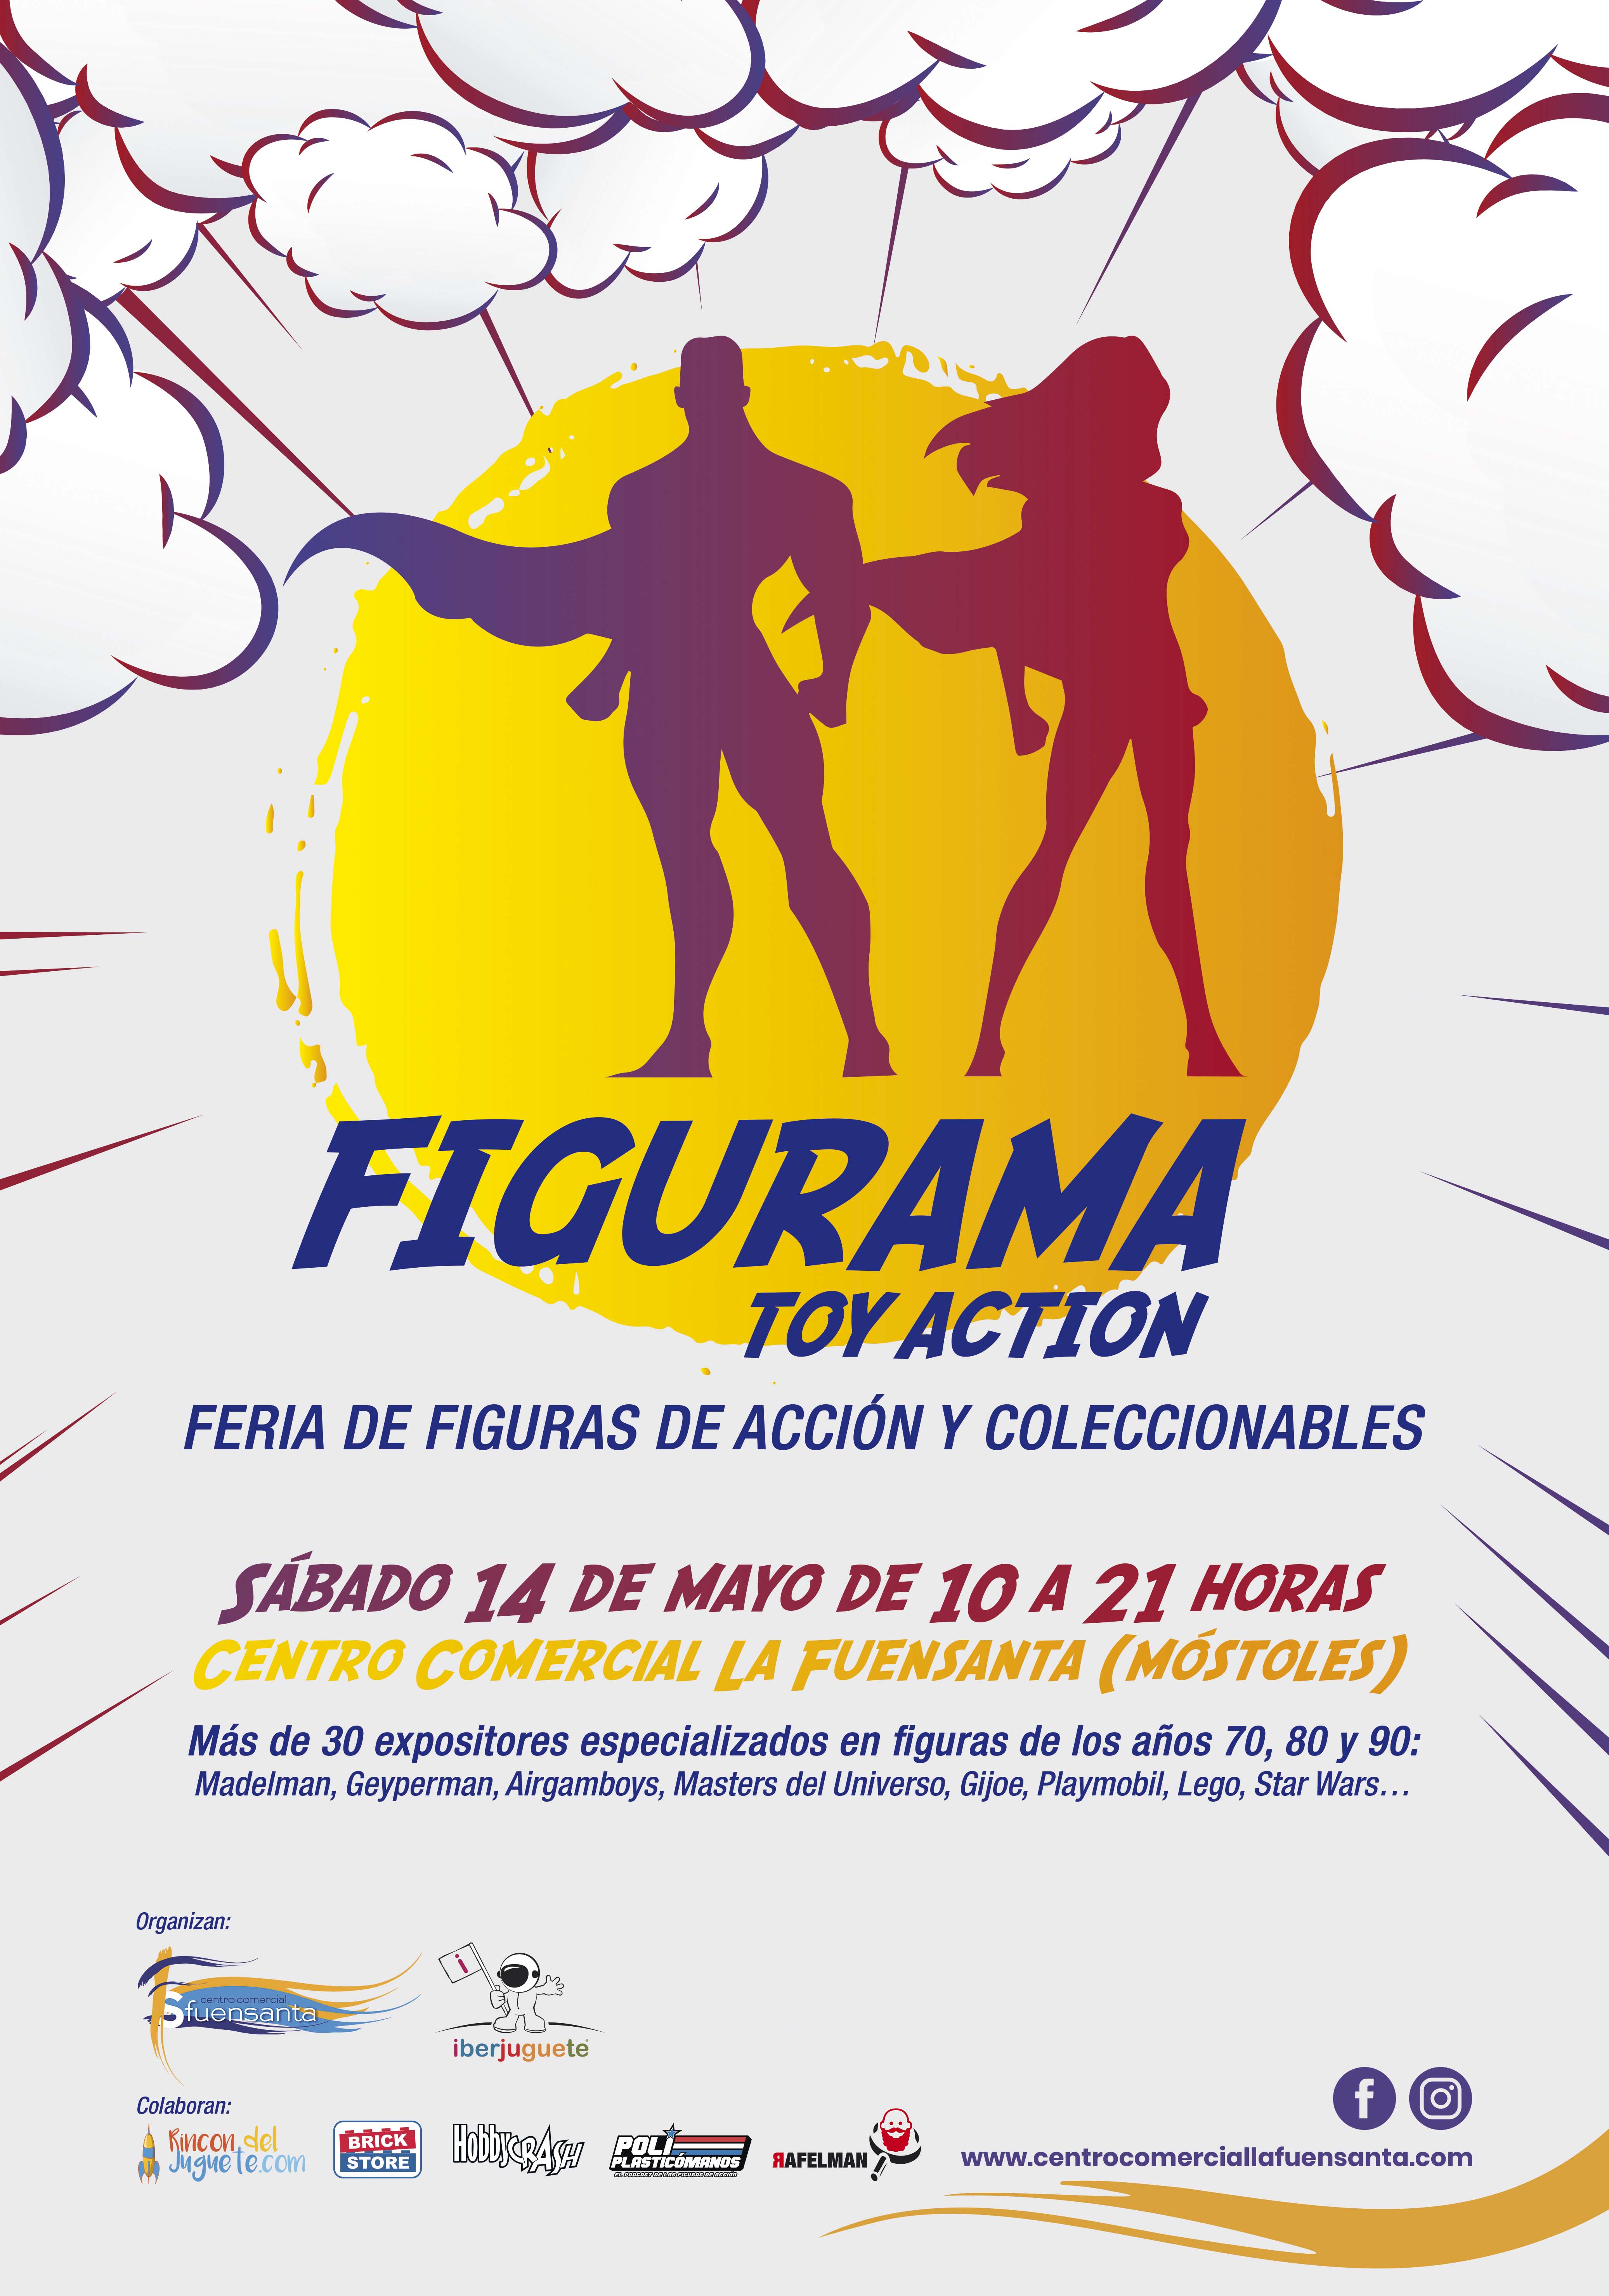 Figurama, Toy Action”  Feria de figuras de acción y coleccionables 